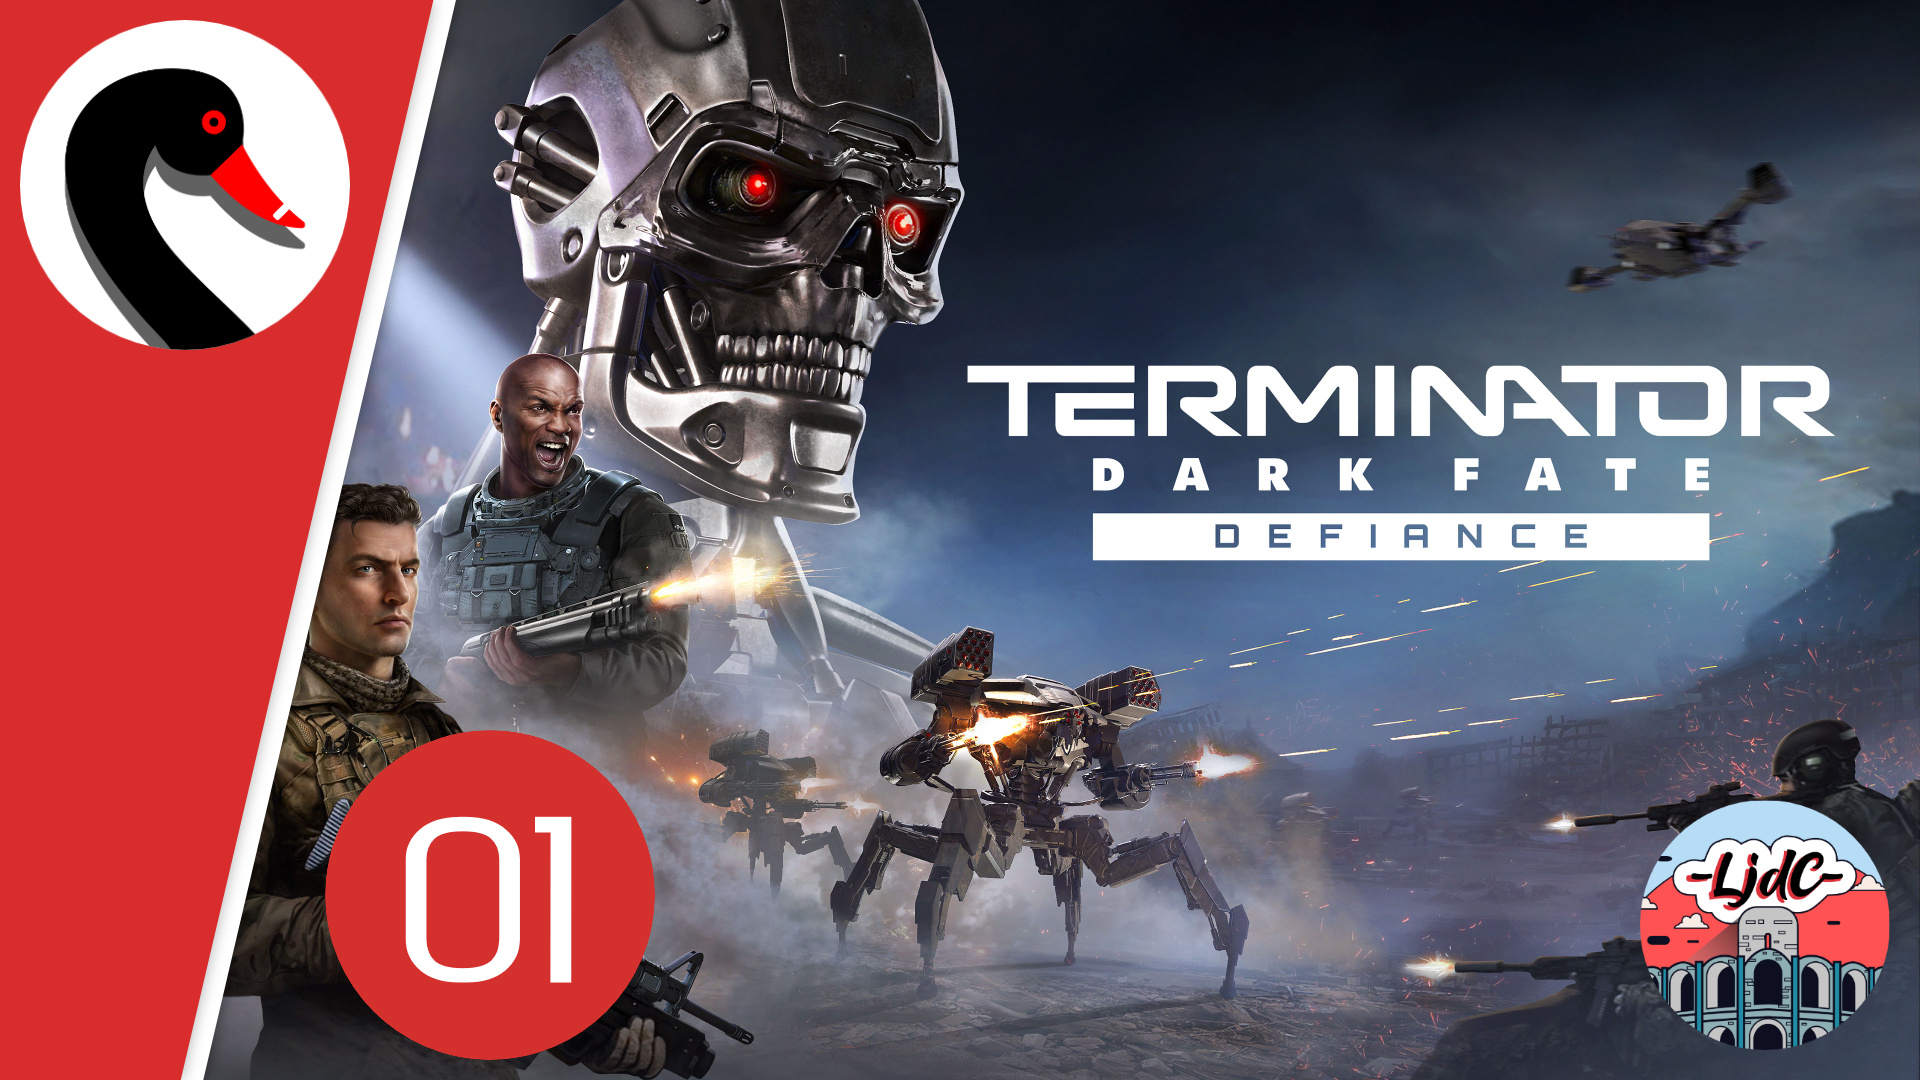 Vignette du let's play Terminator Darke Fate - Defiance, montrant plusieurs humains en train de combattre face aux robots de Legion, avec l'iconique face du Terminator metallique et dérangeant en gros plan.